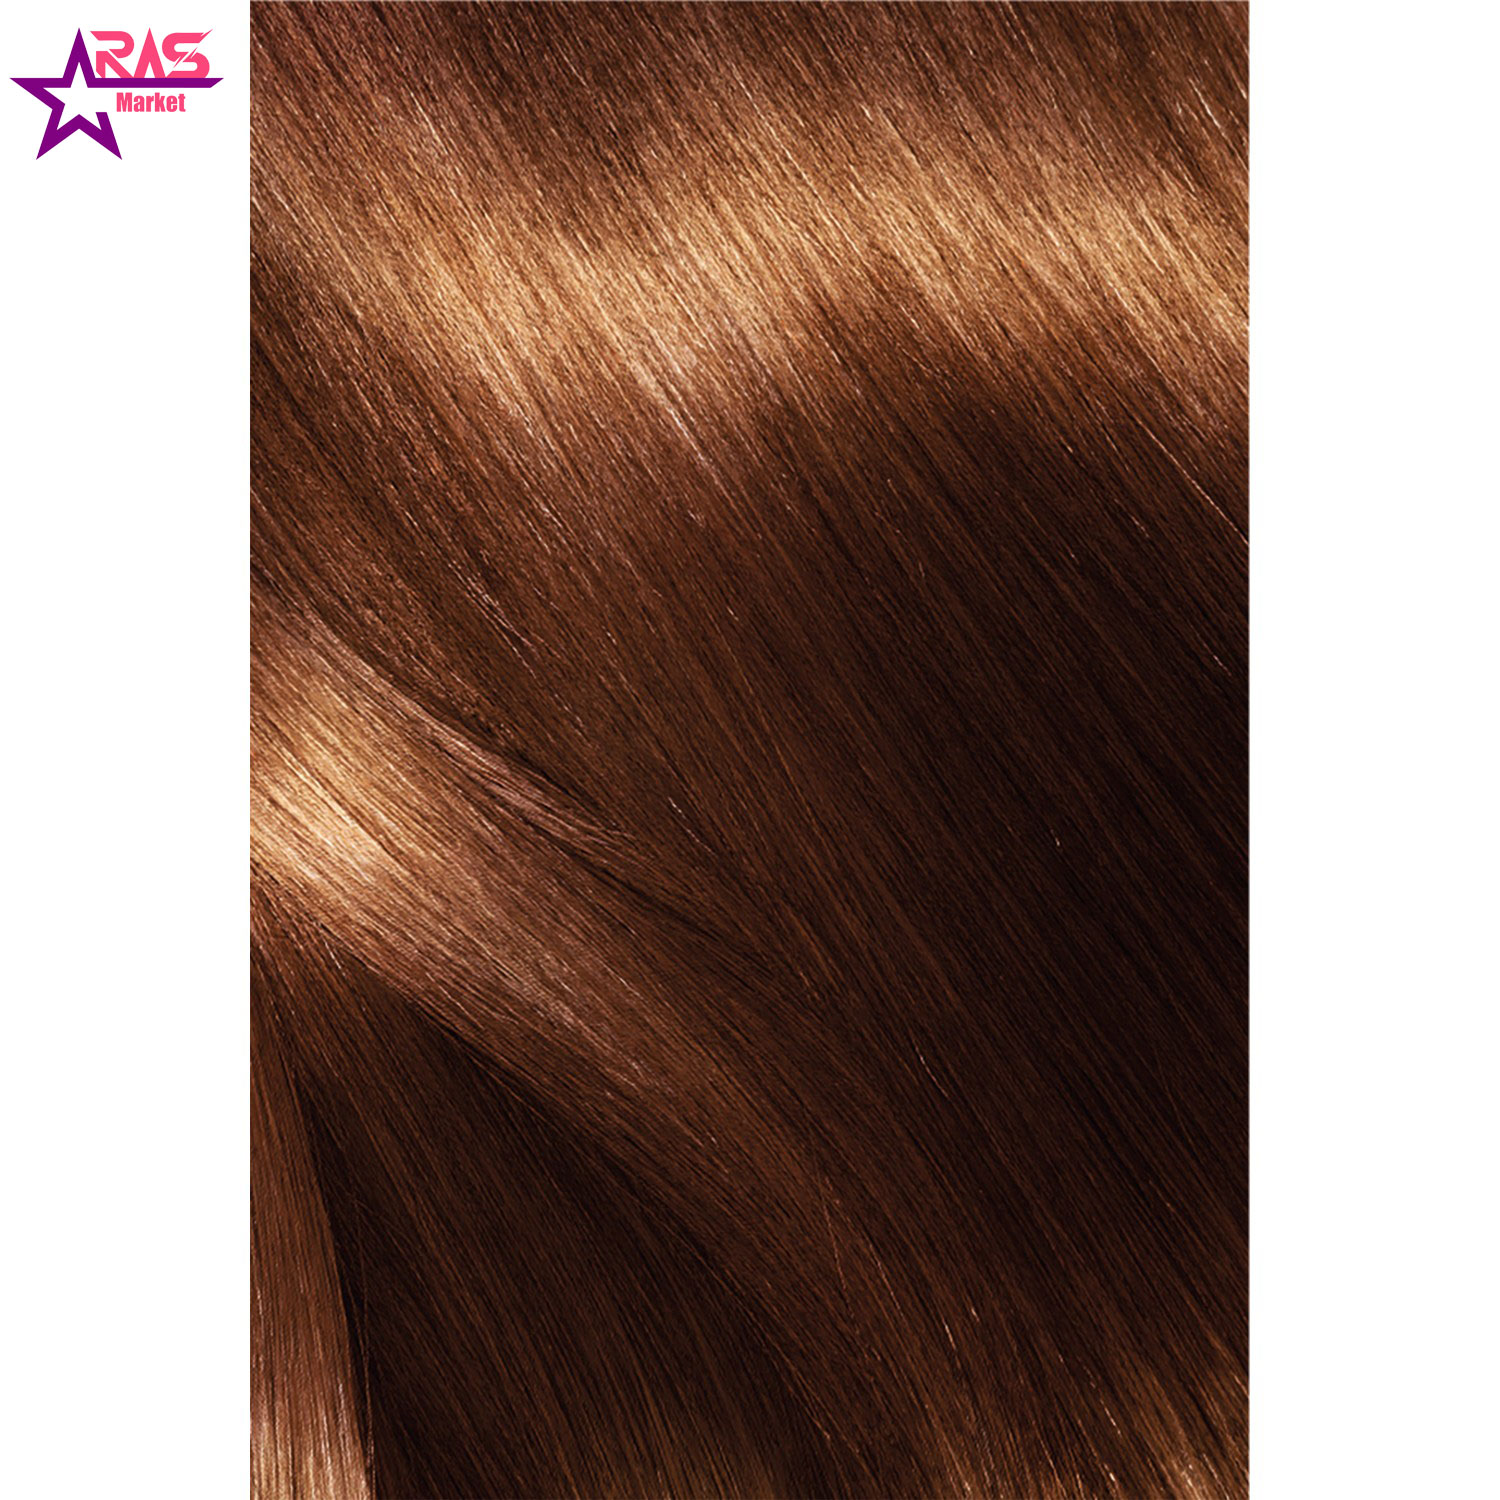 کیت رنگ مو لورآل سری Excellence شماره 6.35 ، فروشگاه اینترنتی ارس مارکت ، بهداشت بانوان ، رنگ مو زنانه